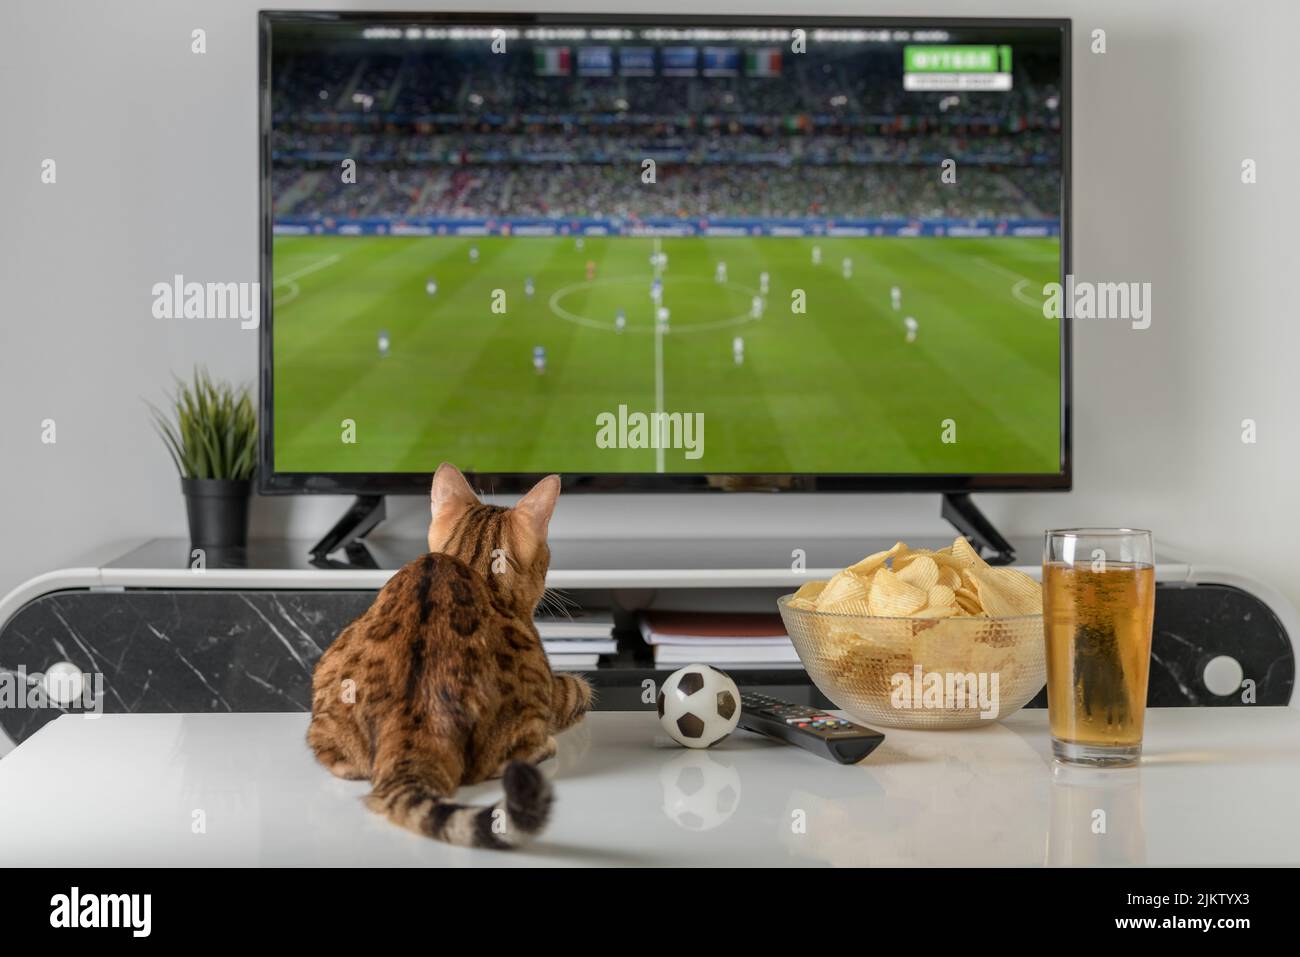 Viendo futbol en la television fotografías e imágenes de alta resolución -  Página 9 - Alamy